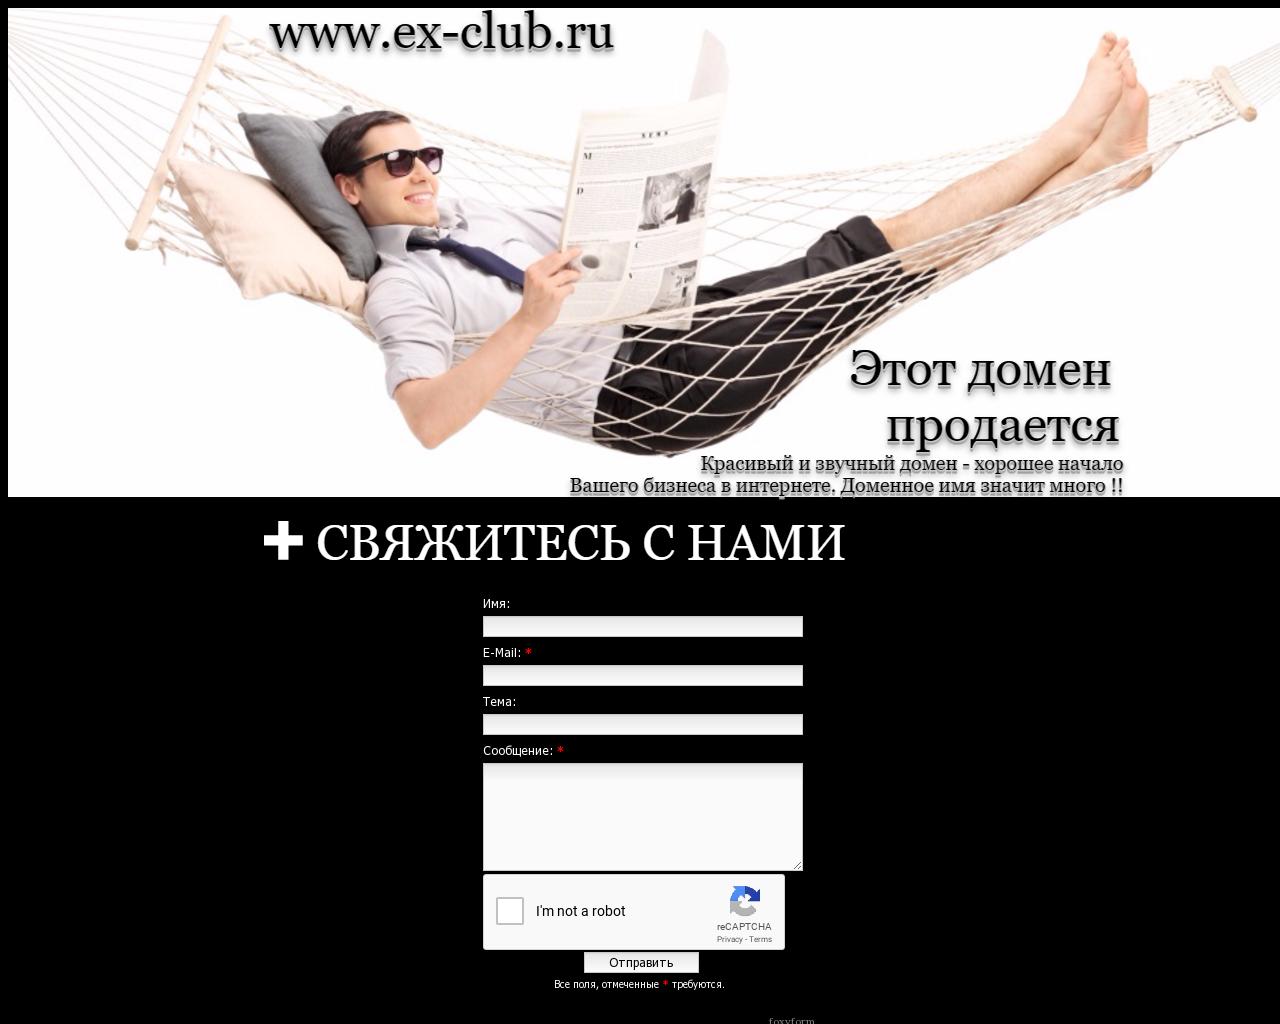 Изображение сайта ex-club.ru в разрешении 1280x1024